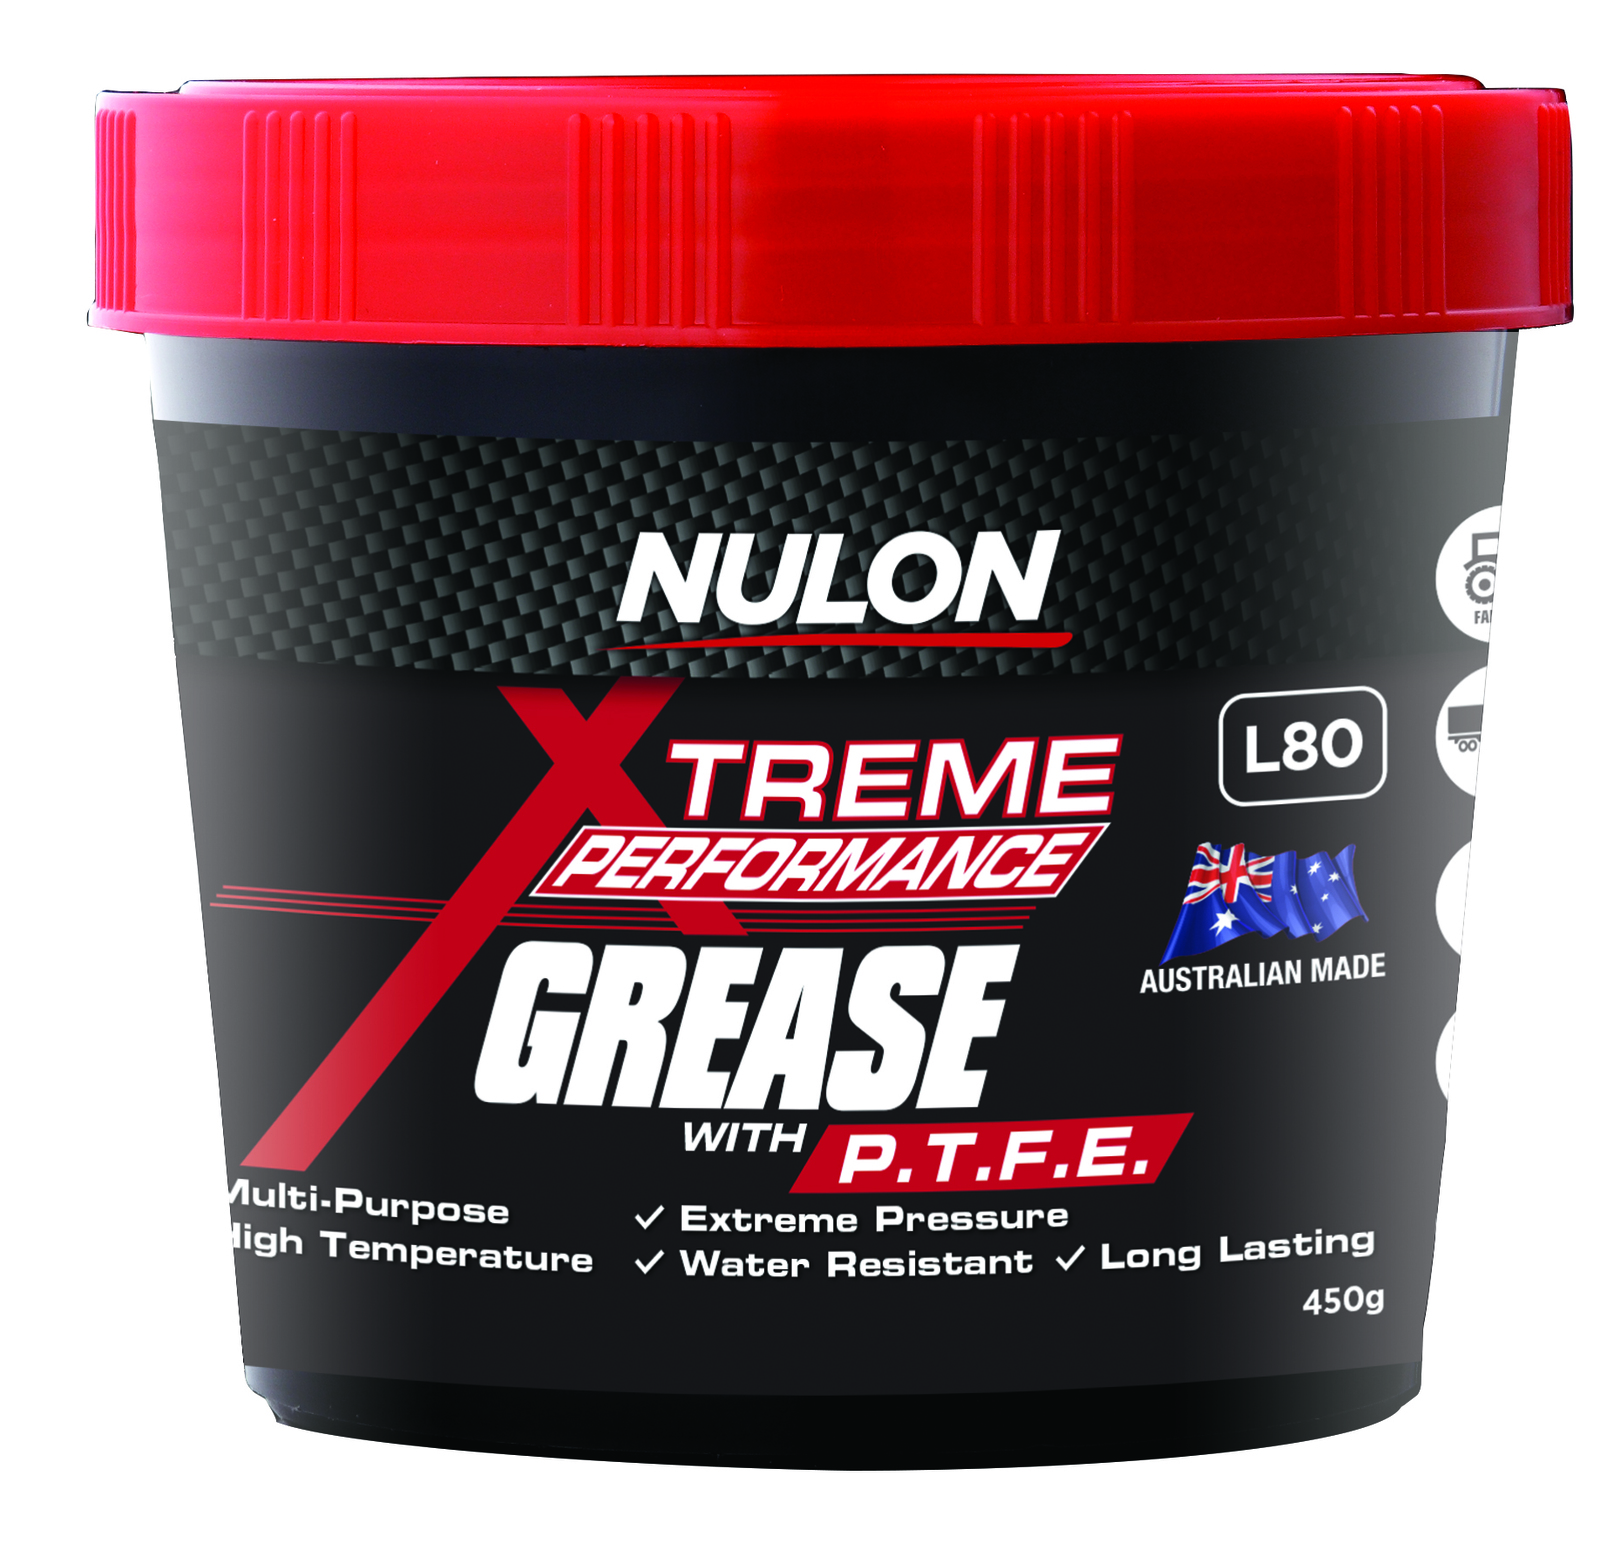 NULON 450gm Tub High Perform Grease, Each